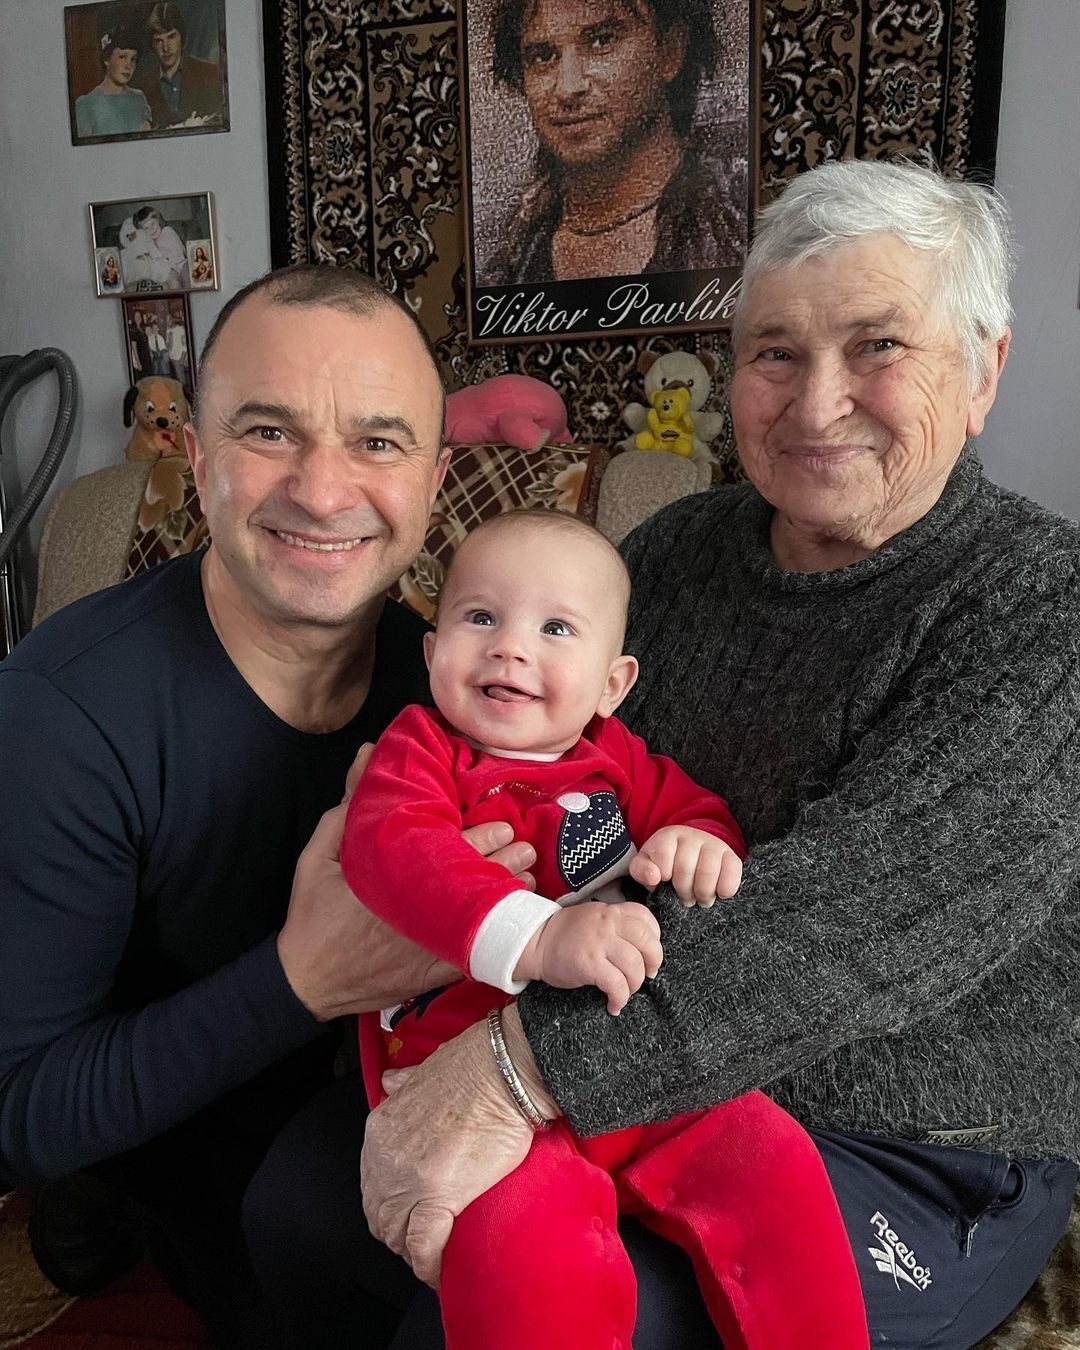 Віктор Павлік вперше познайомив 6-місячного сина зі своєю мамою і показав тата. Зворушливі кадри